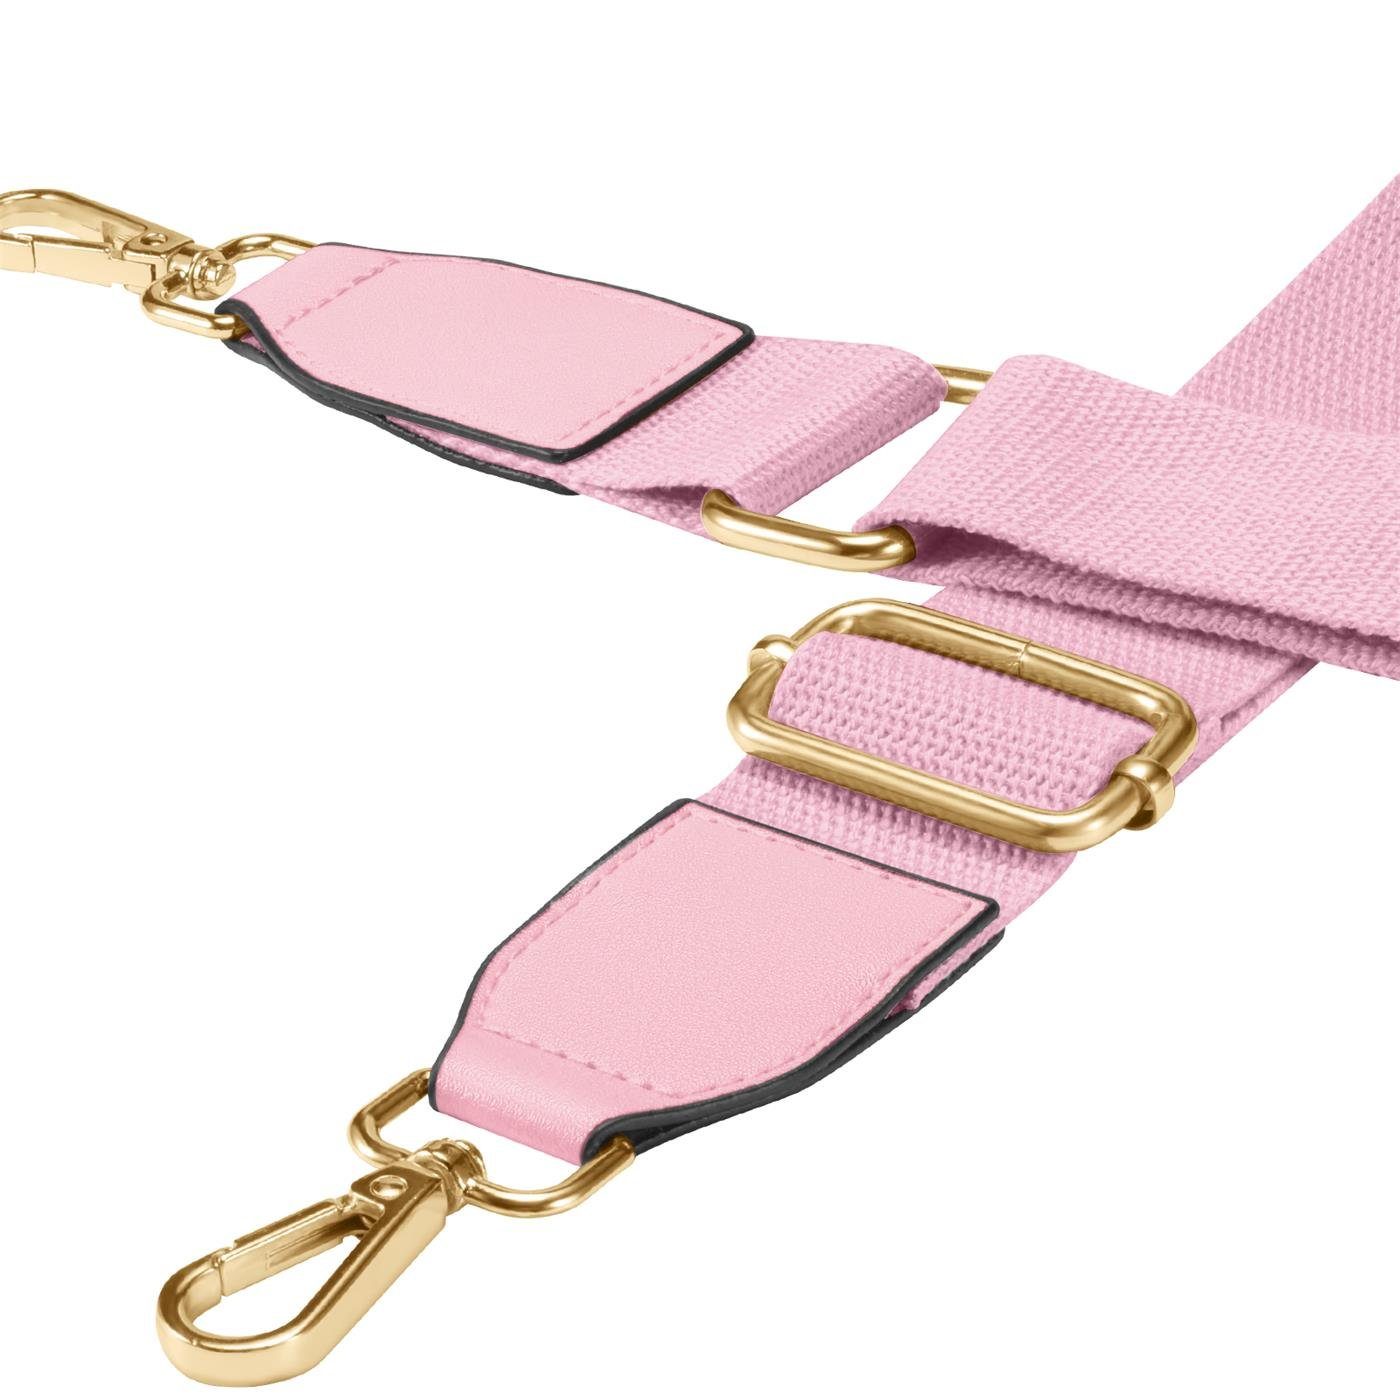 Handtaschen Ersatz Umhängegurt Rosa VERCO Gurt Schulterriemen einstellbar verstellbar Riemen für Trageriemen Schulter